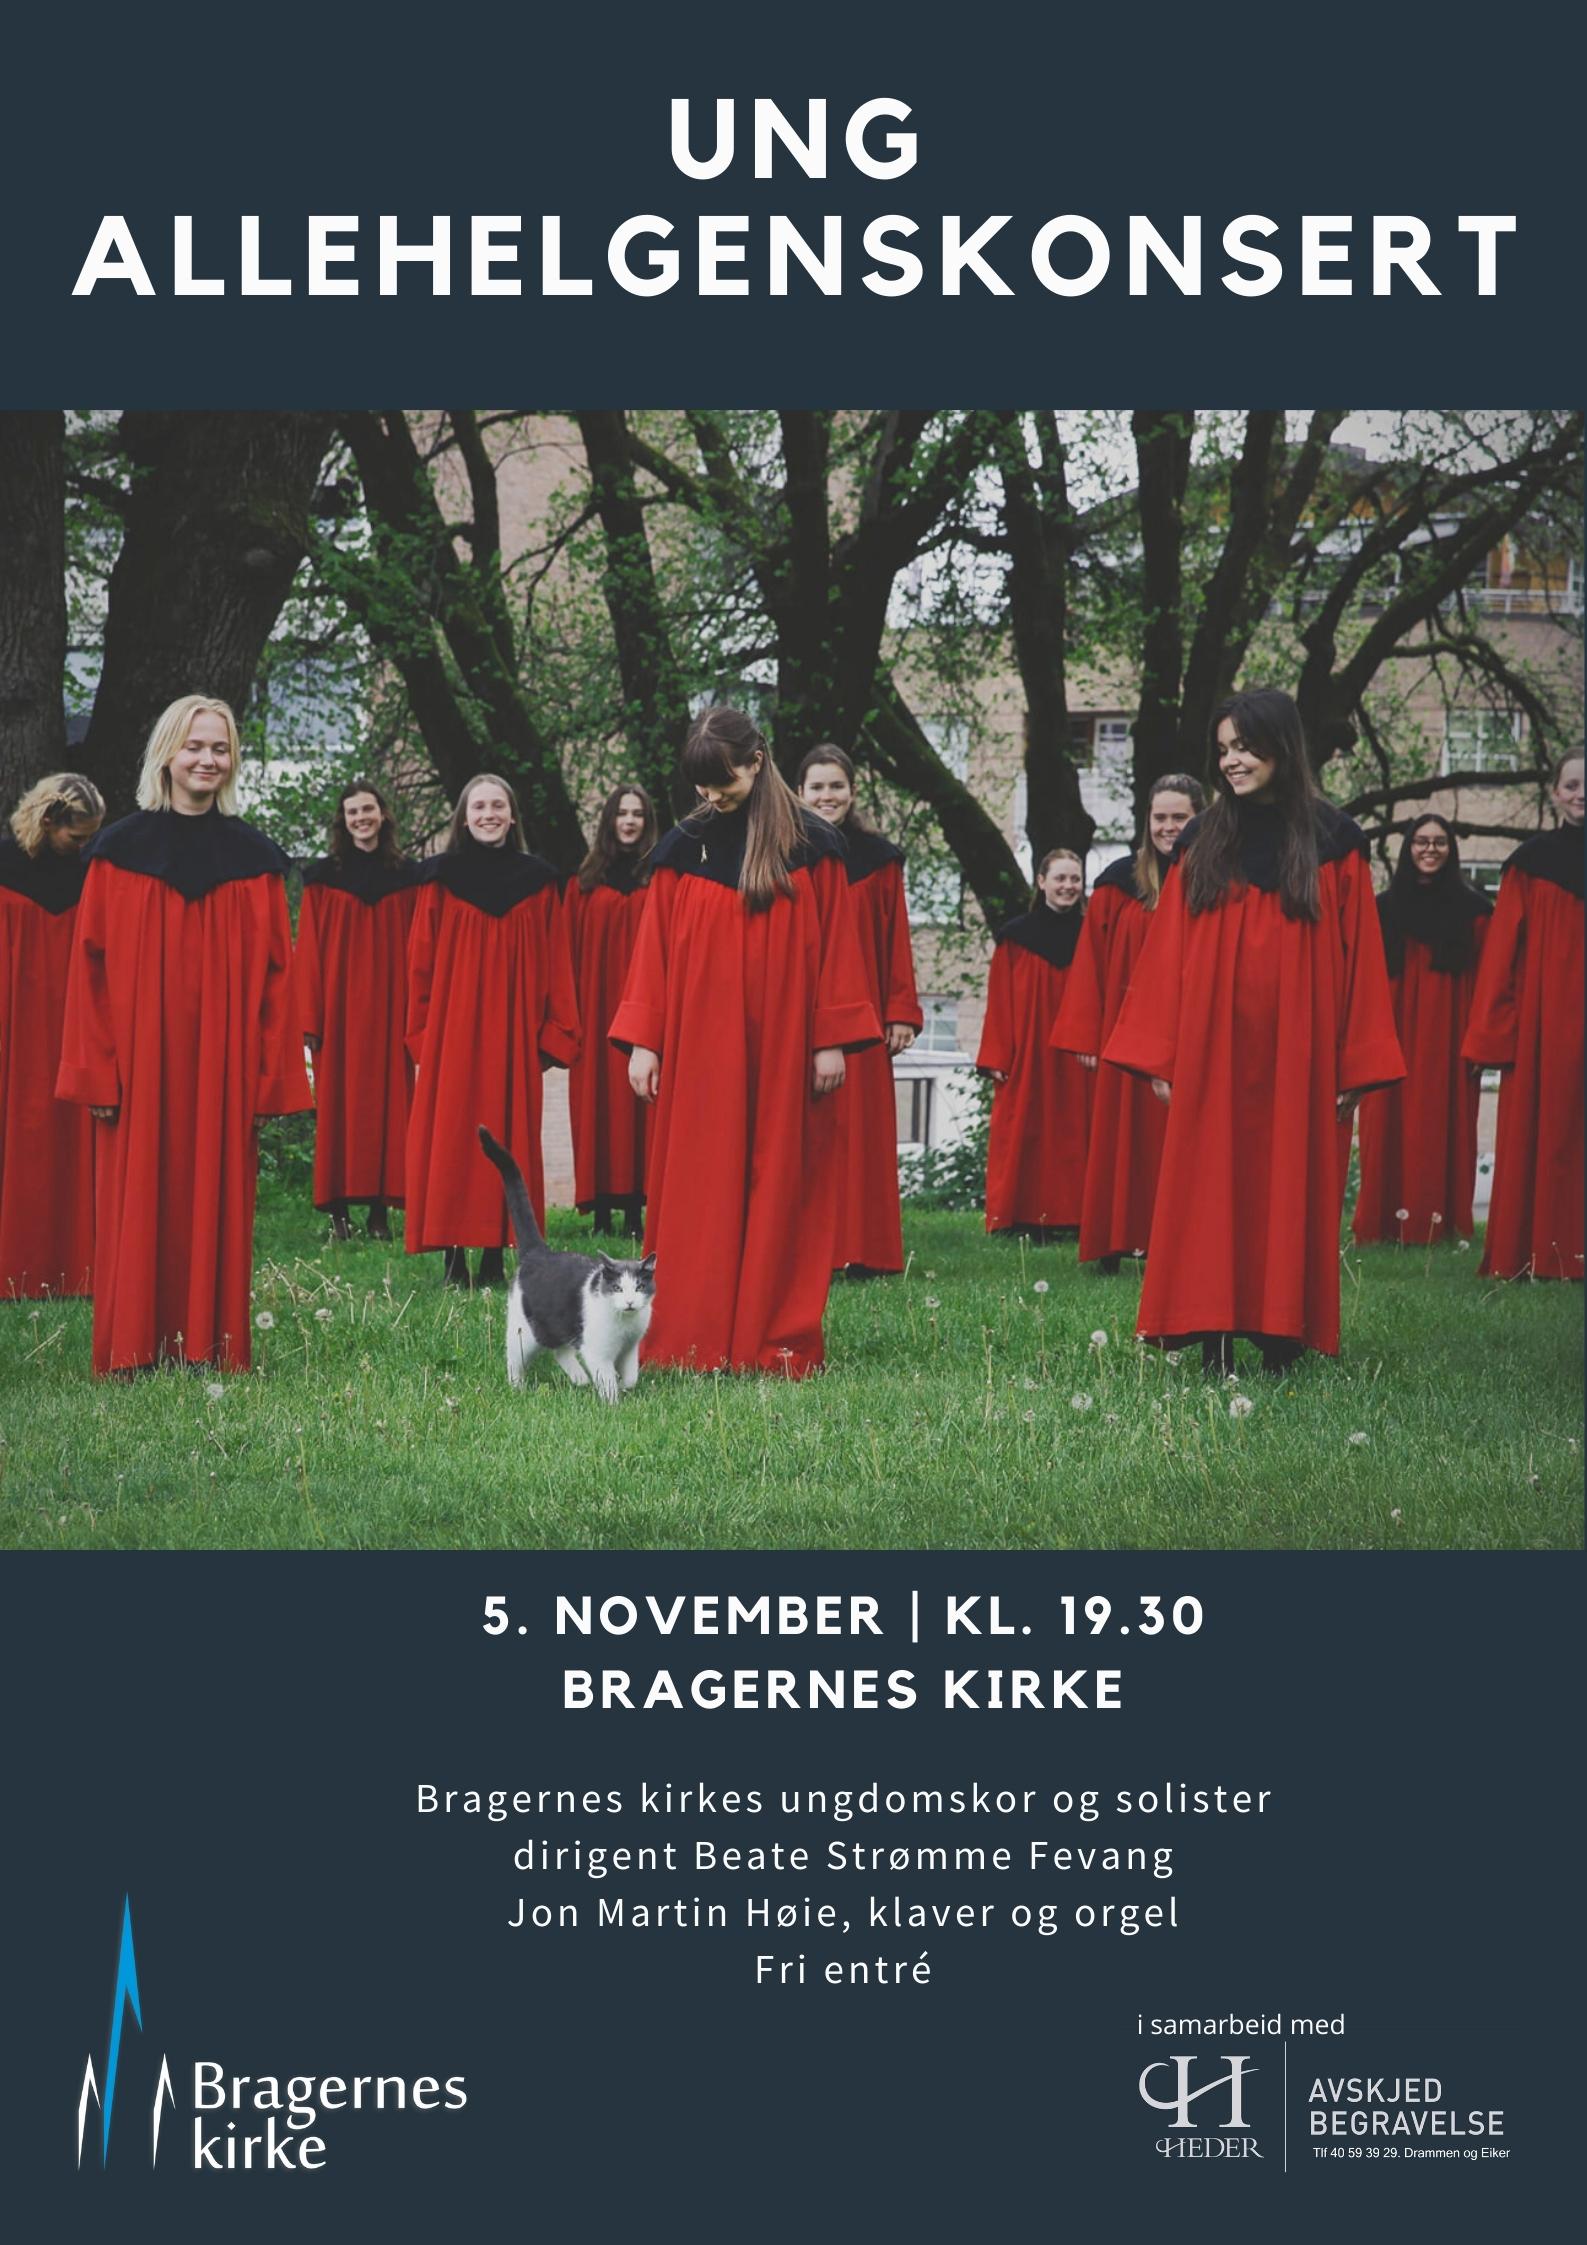 Plakat for Ung allehelgenskonsert med Bragernes kirkes ungdomskor